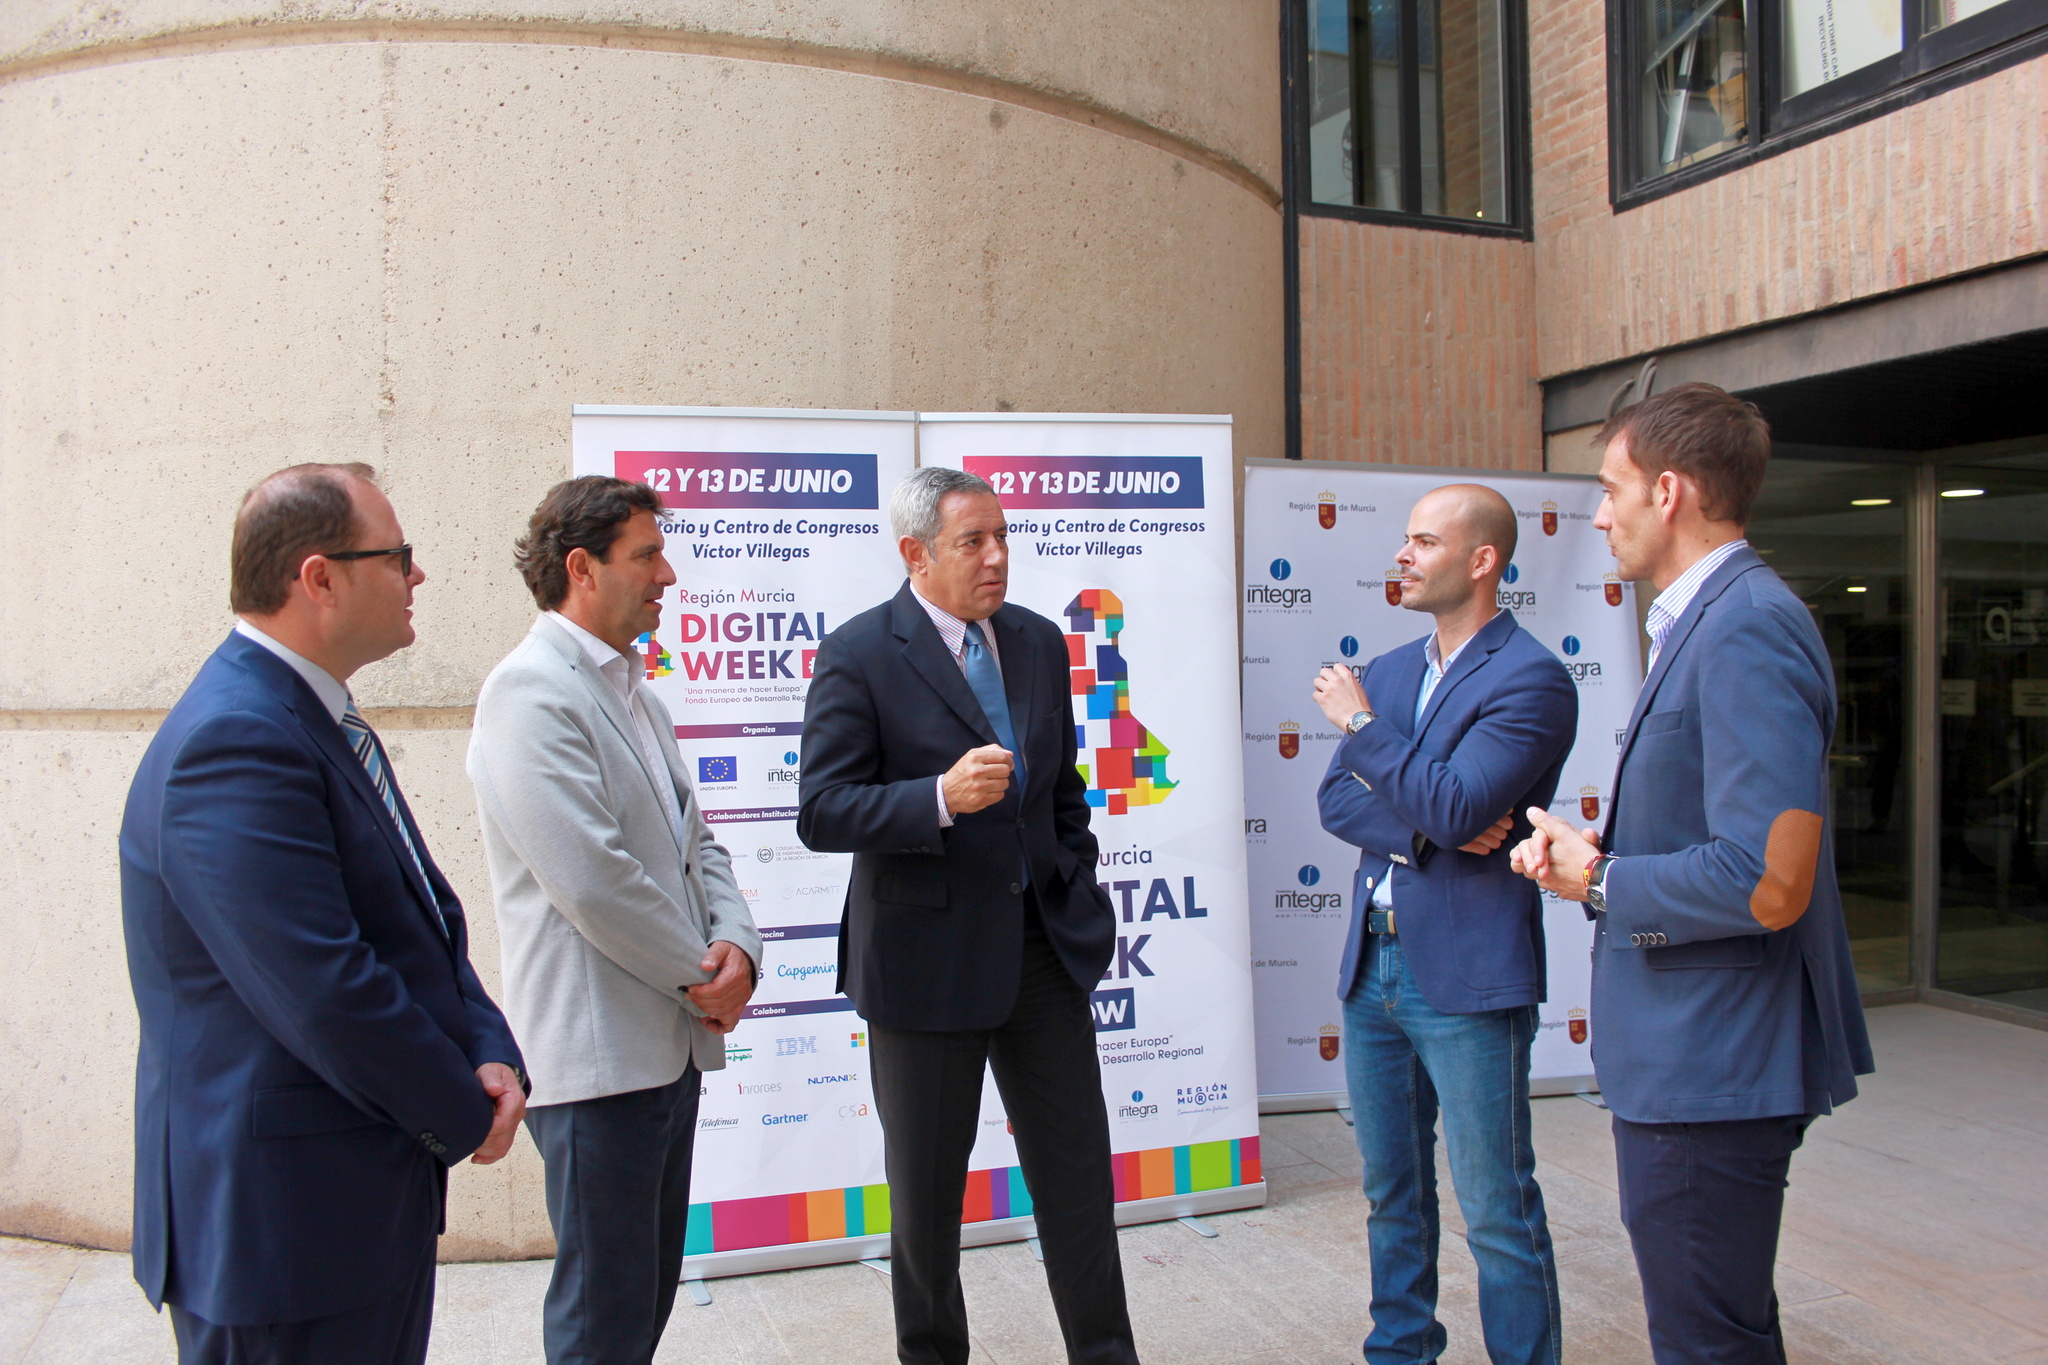 El consejero de Hacienda, Fernando de la Cierva, presenta el congreso sobre nuevas tecnologías Región de Murcia Digital Week